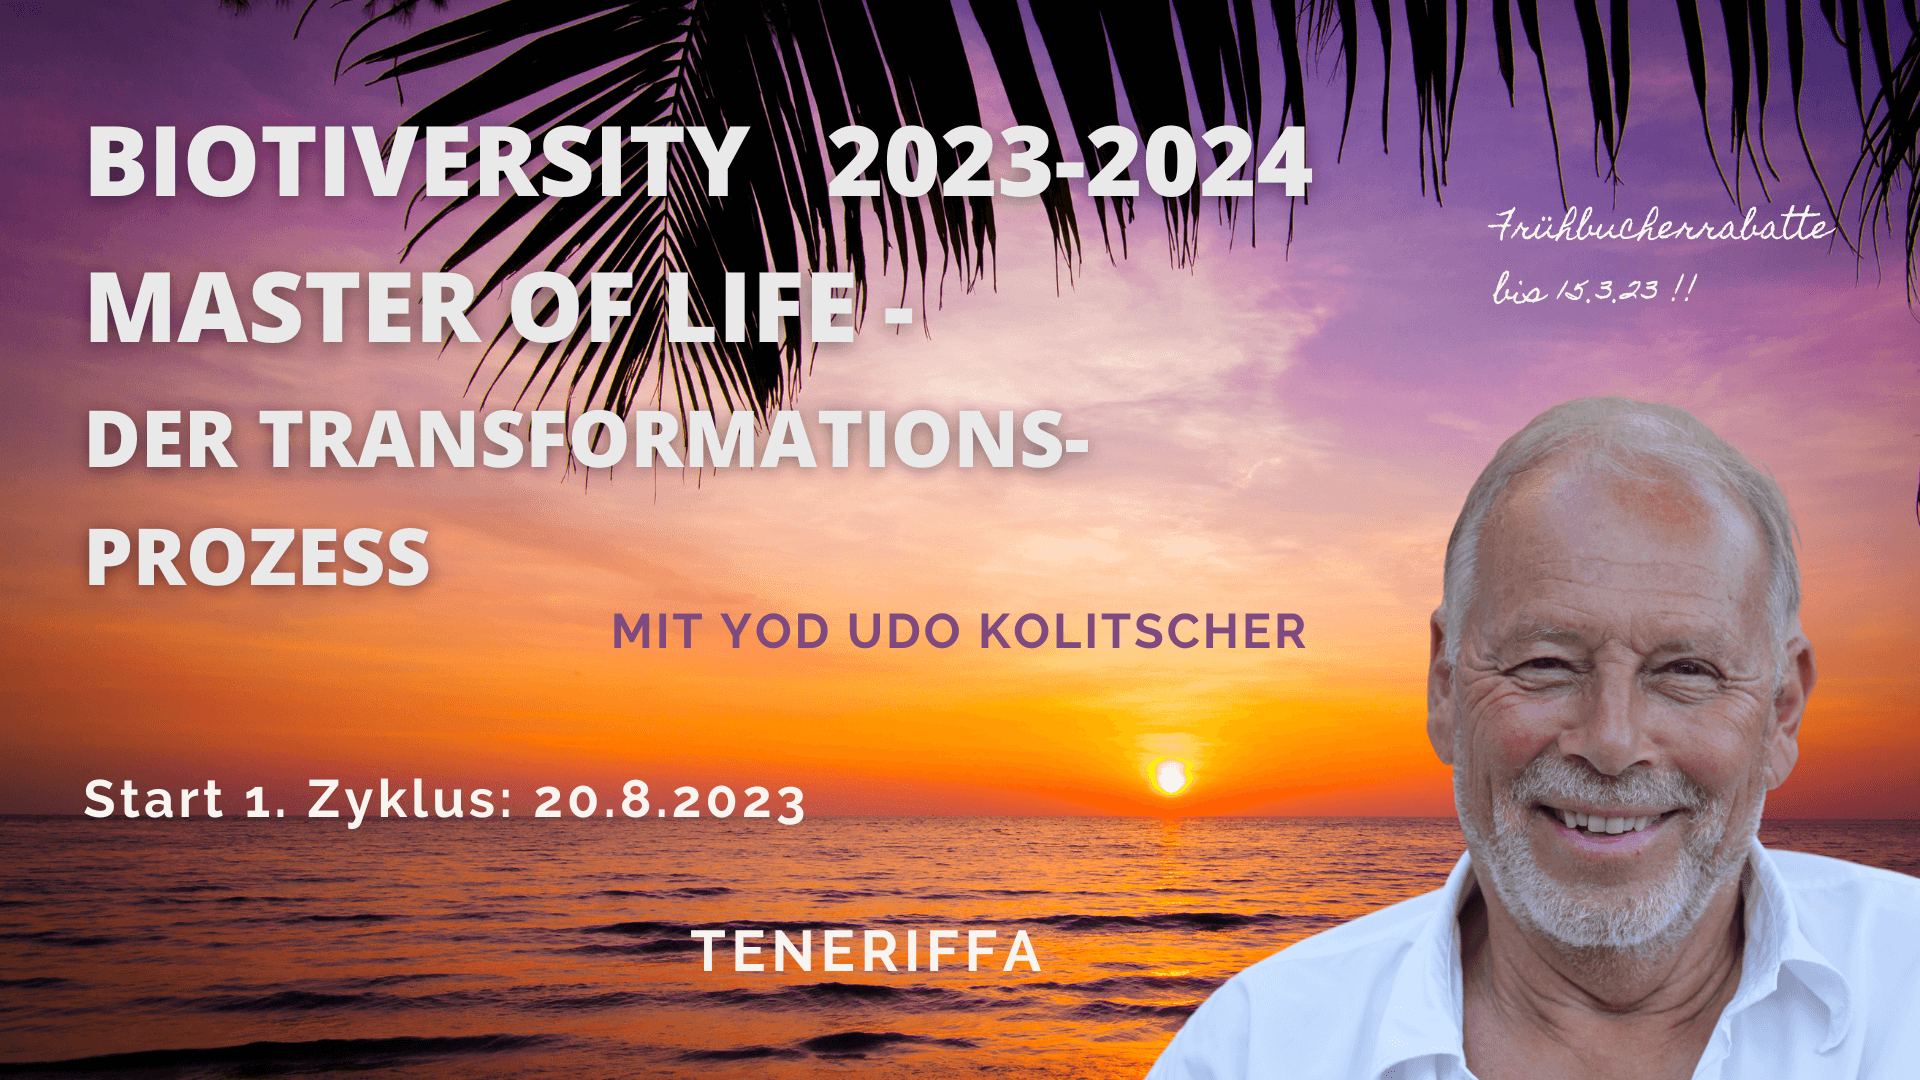 Biotiversity 2023-2024 - Frühbucher